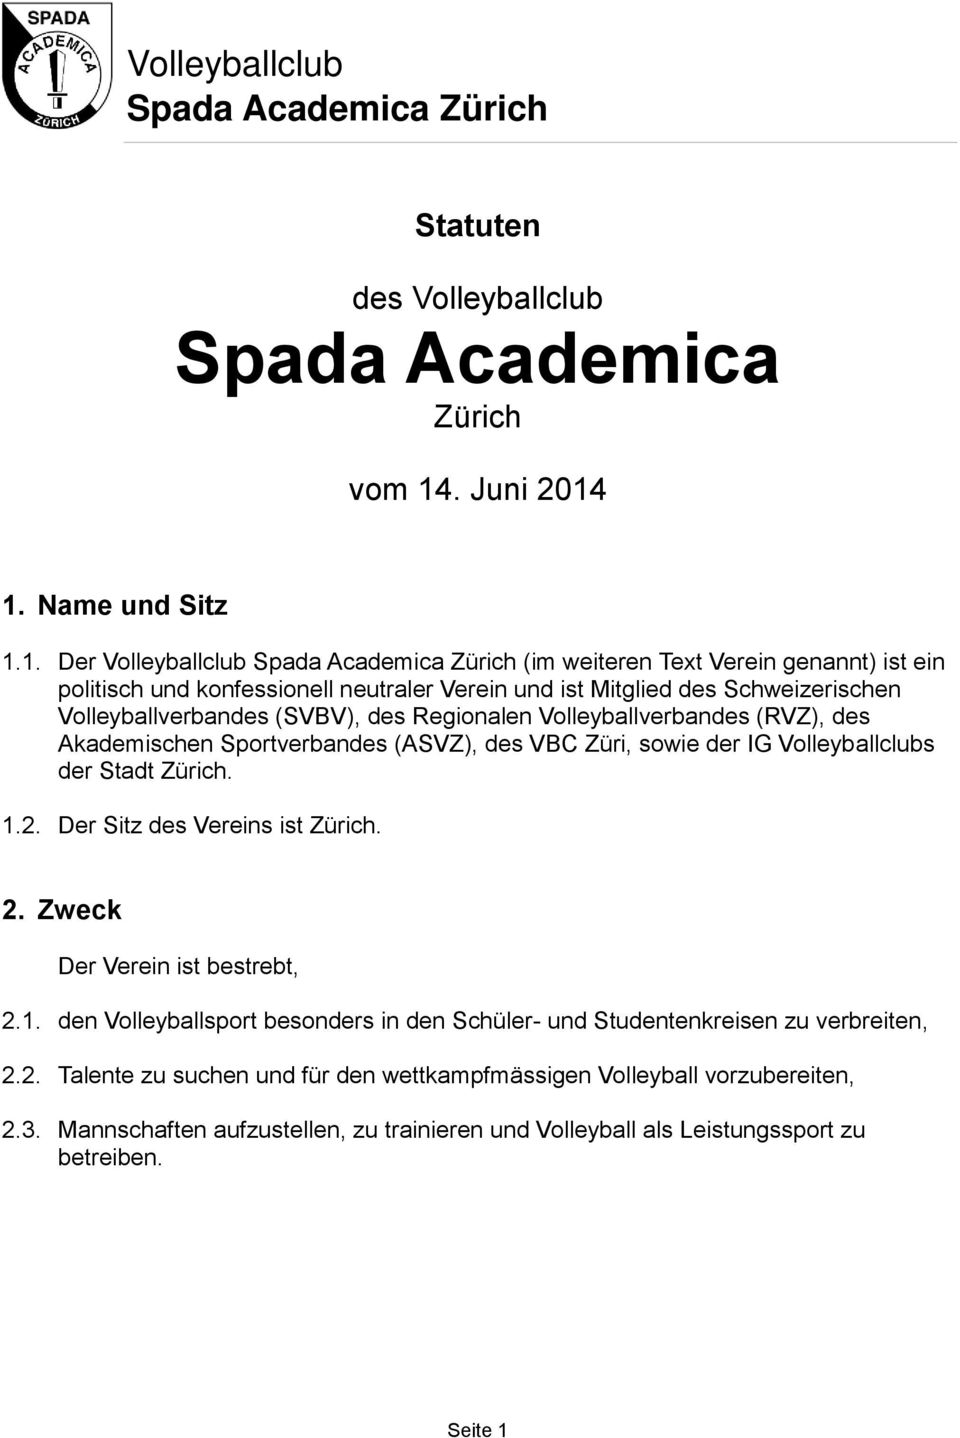 1. Name und Sitz 1.1. Der Volleyballclub Spada Academica Zürich (im weiteren Text Verein genannt) ist ein politisch und konfessionell neutraler Verein und ist Mitglied des Schweizerischen